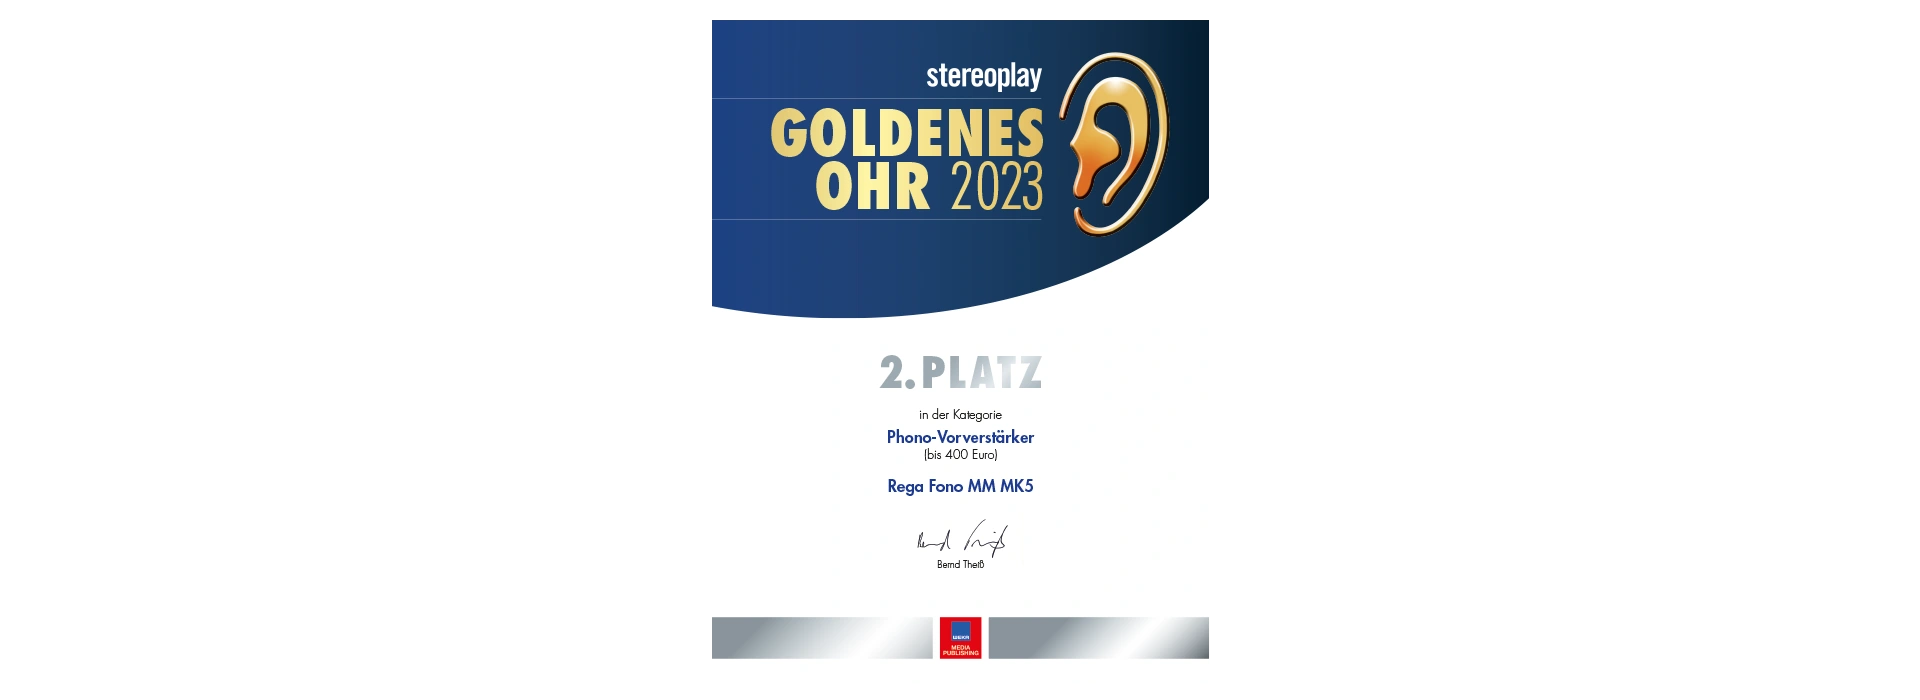 Stereoplay | Goldenes Ohr 2023 | 2. Platz für Rega Fono MM MK5